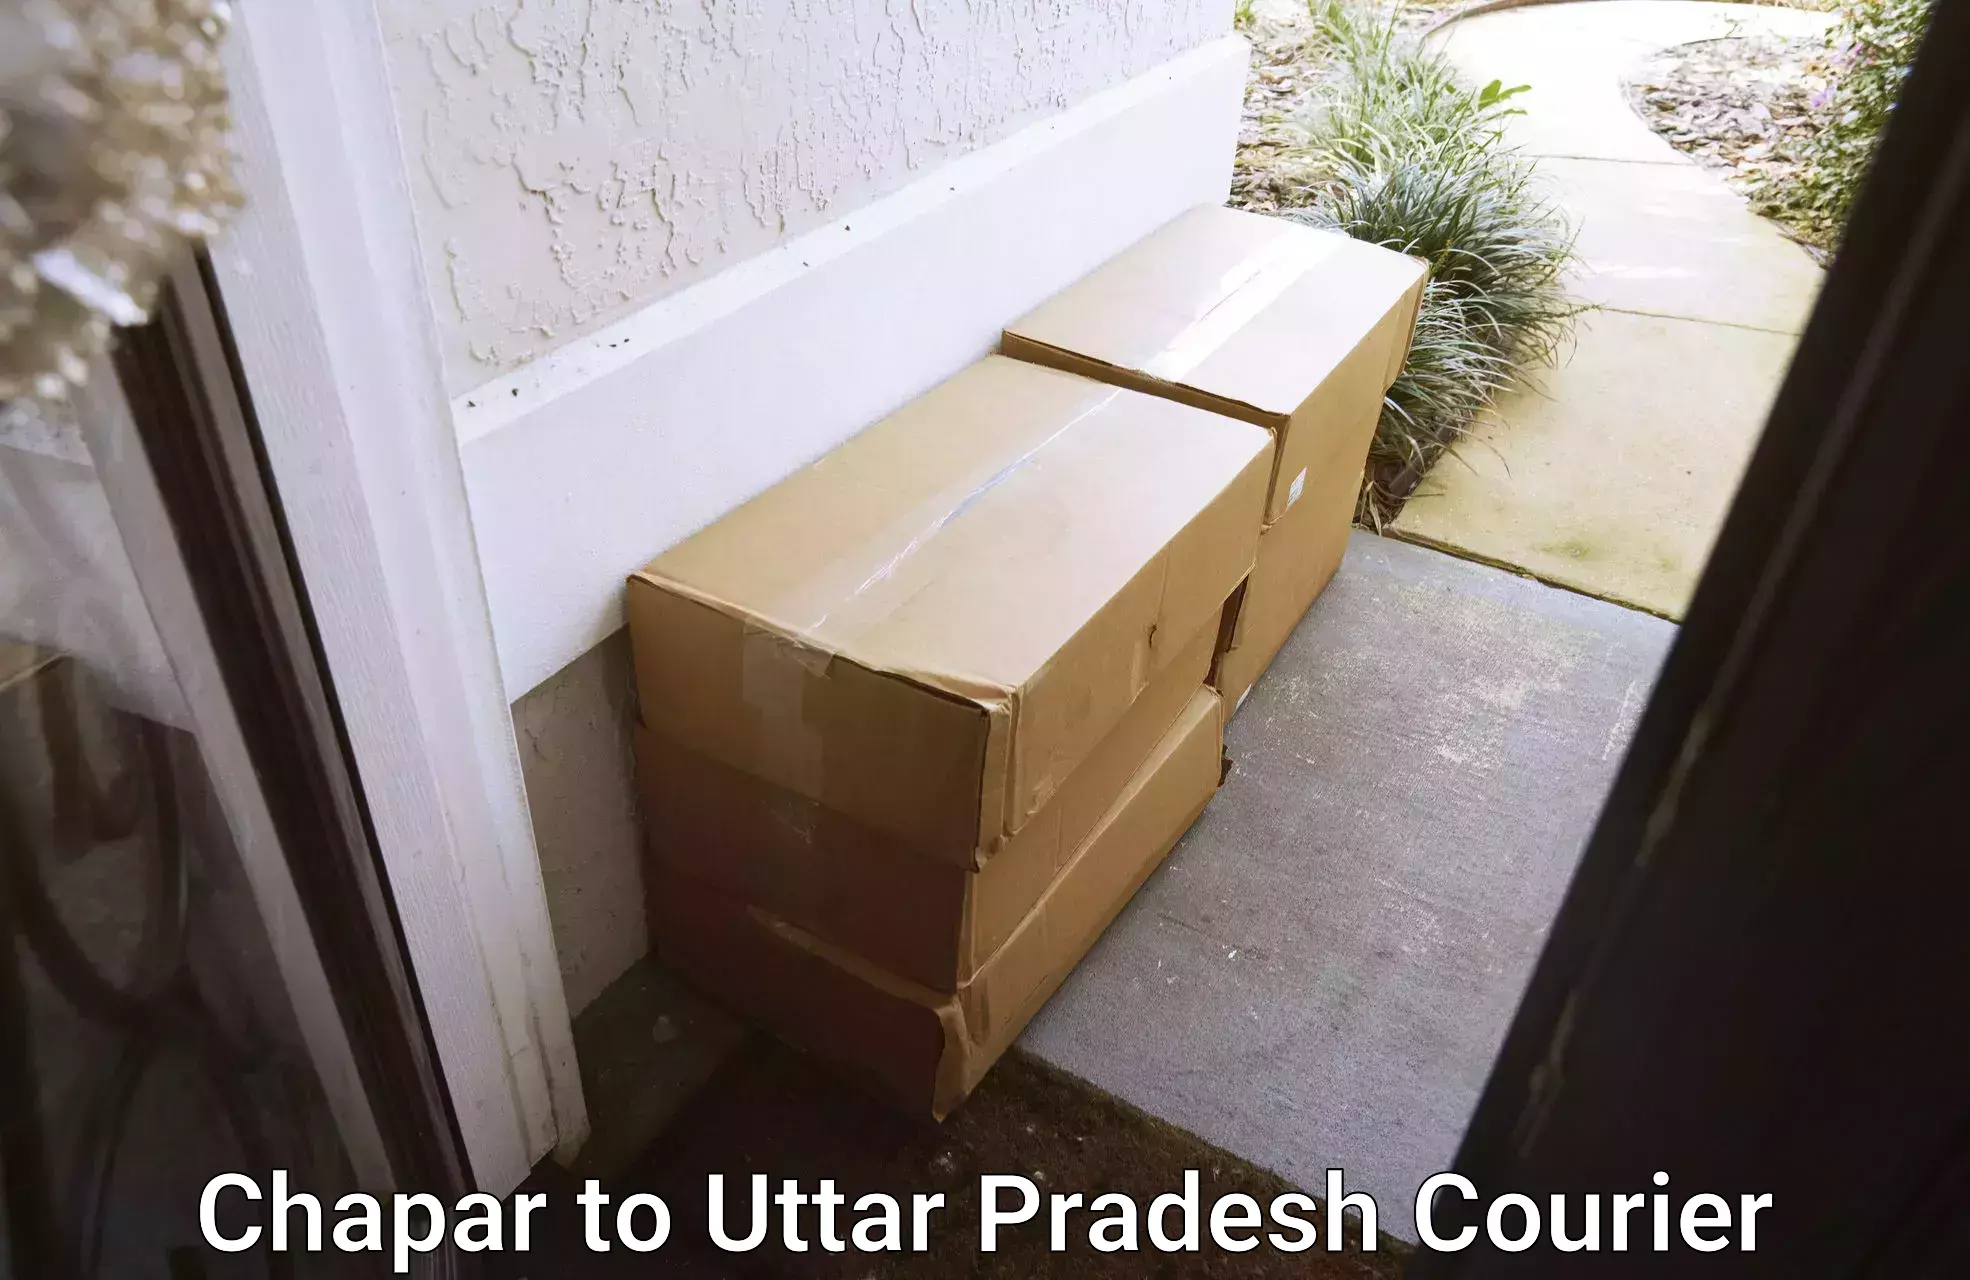 Professional parcel services Chapar to Kuru